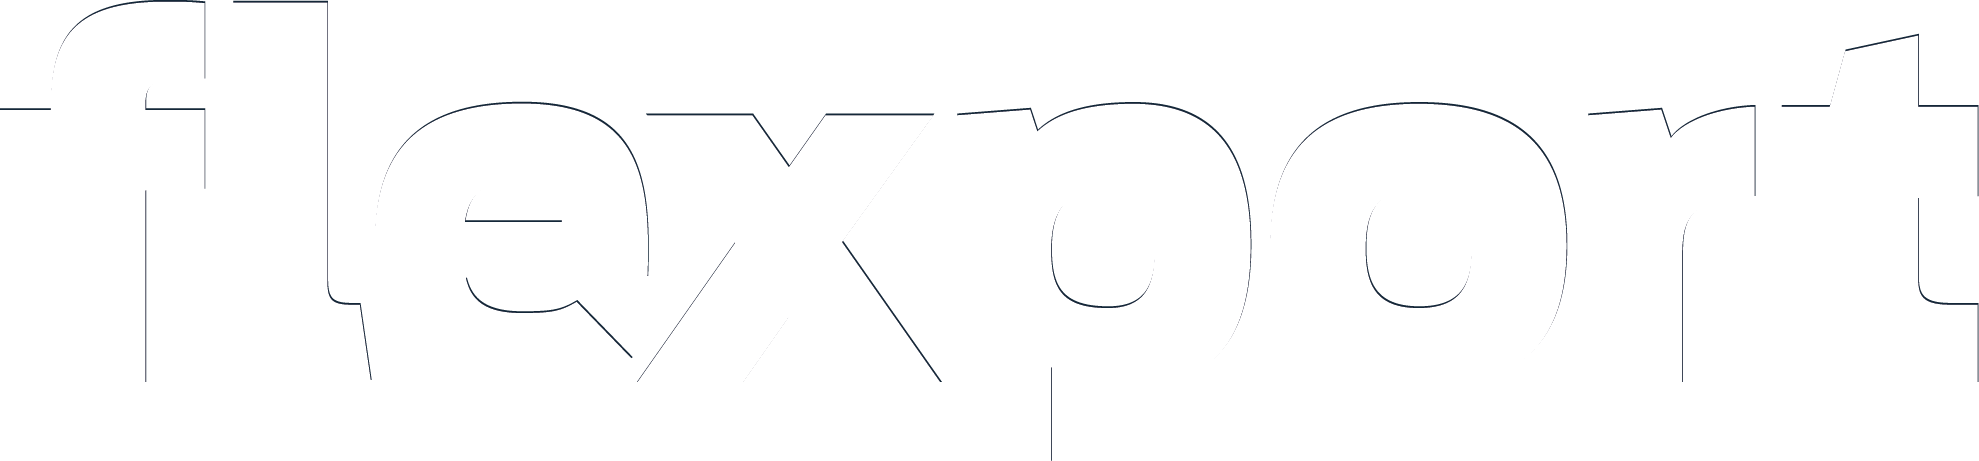 Flexport_Navy_Logo (1)-02